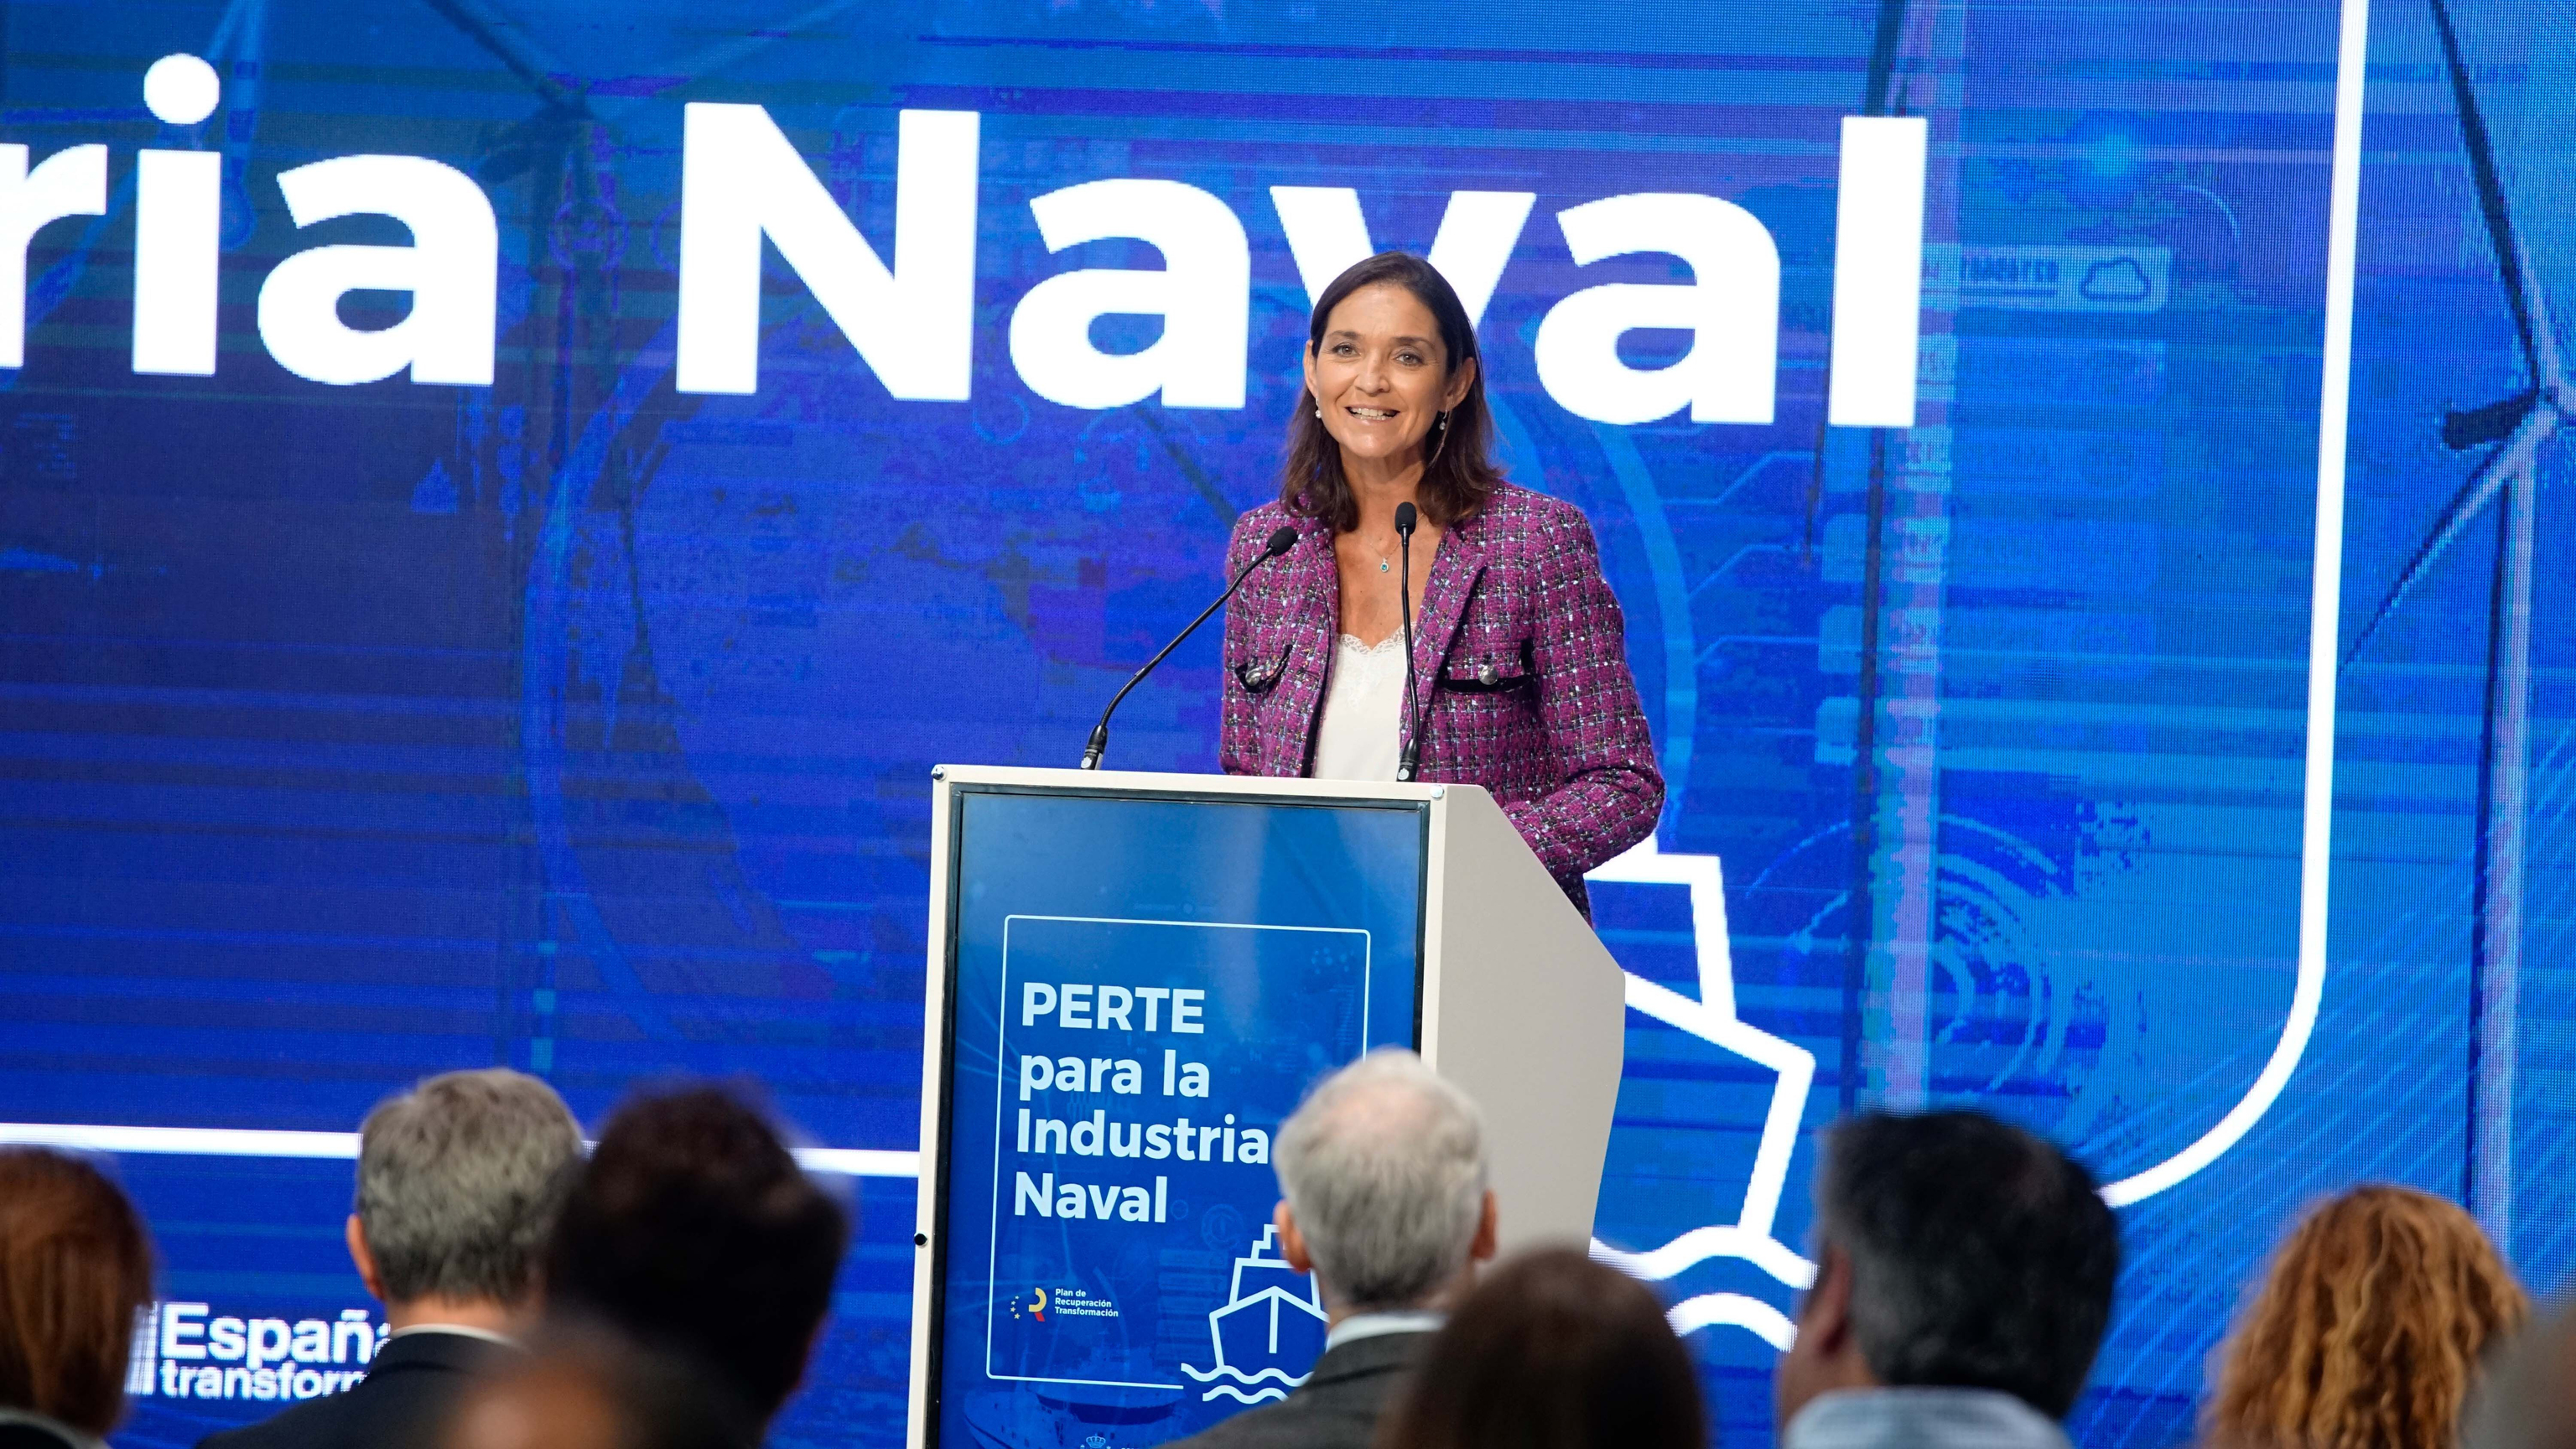 El naufragio de fondos UE: el Ministerio veta medio Perte Naval que le presentó su propia gestora